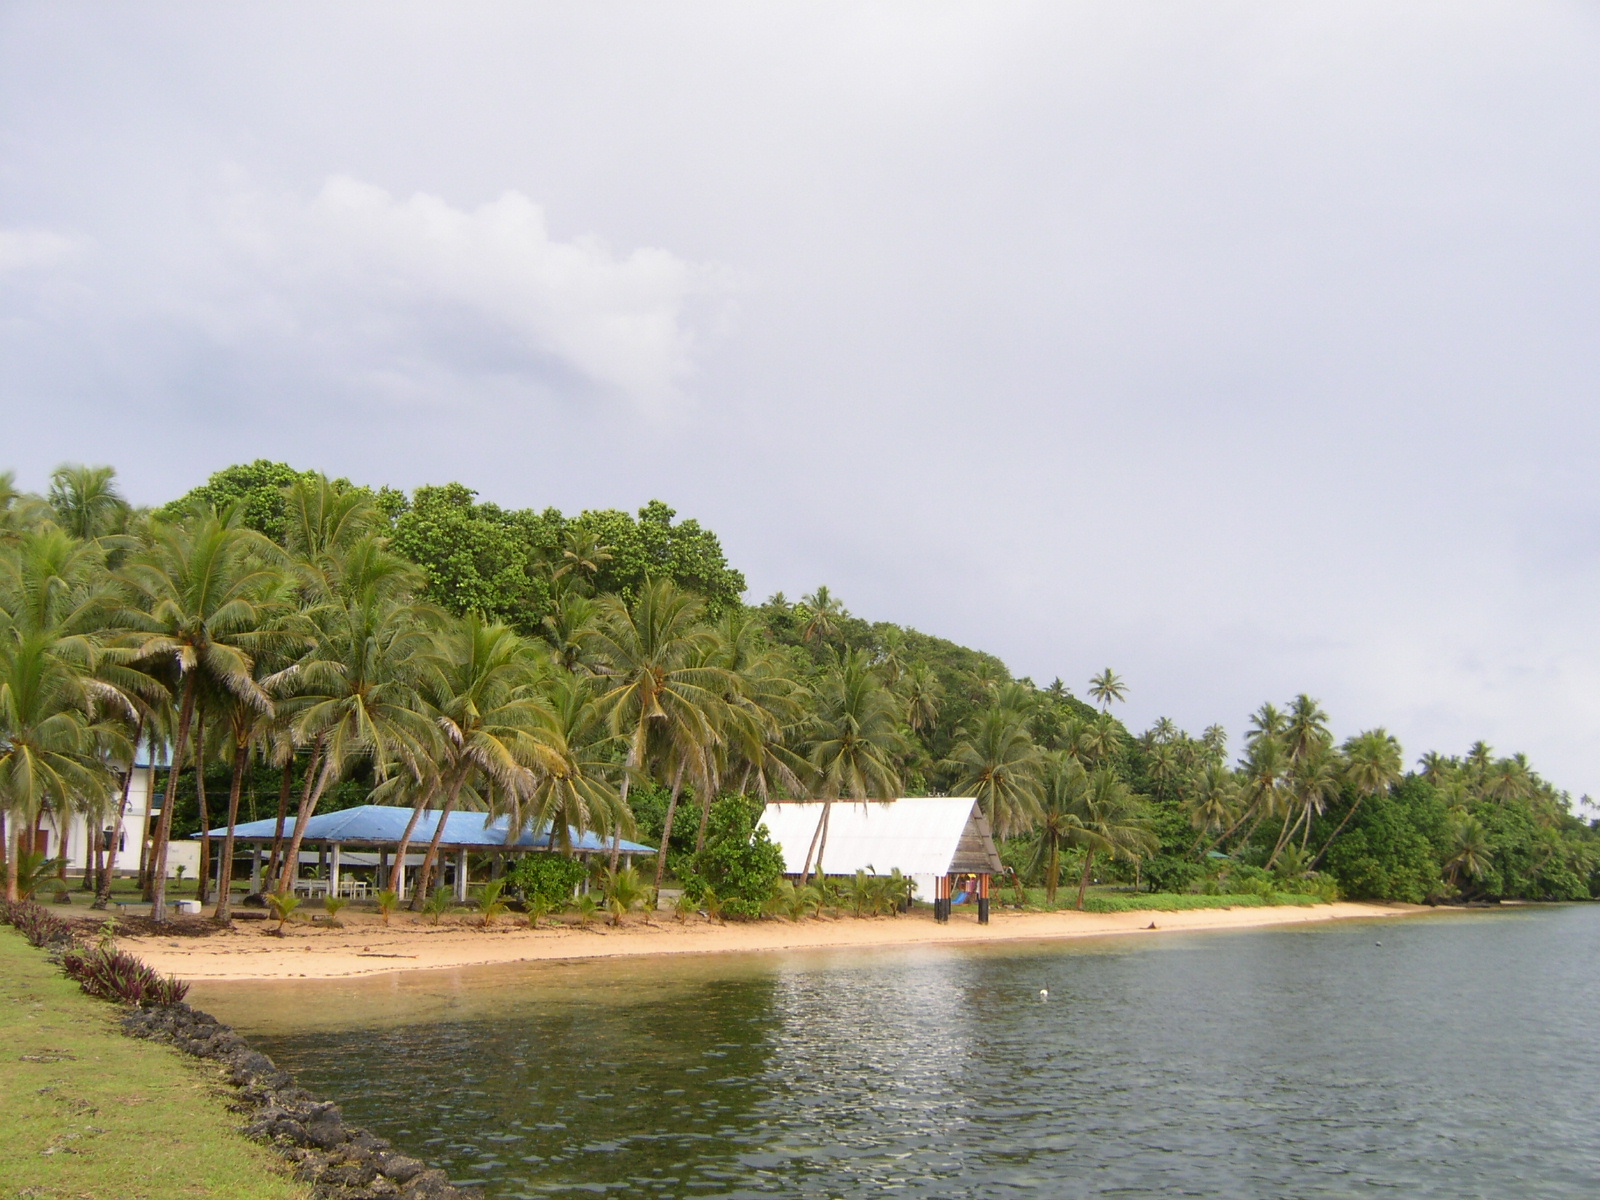 Foto di Palau East Beach ubicato in zona naturale